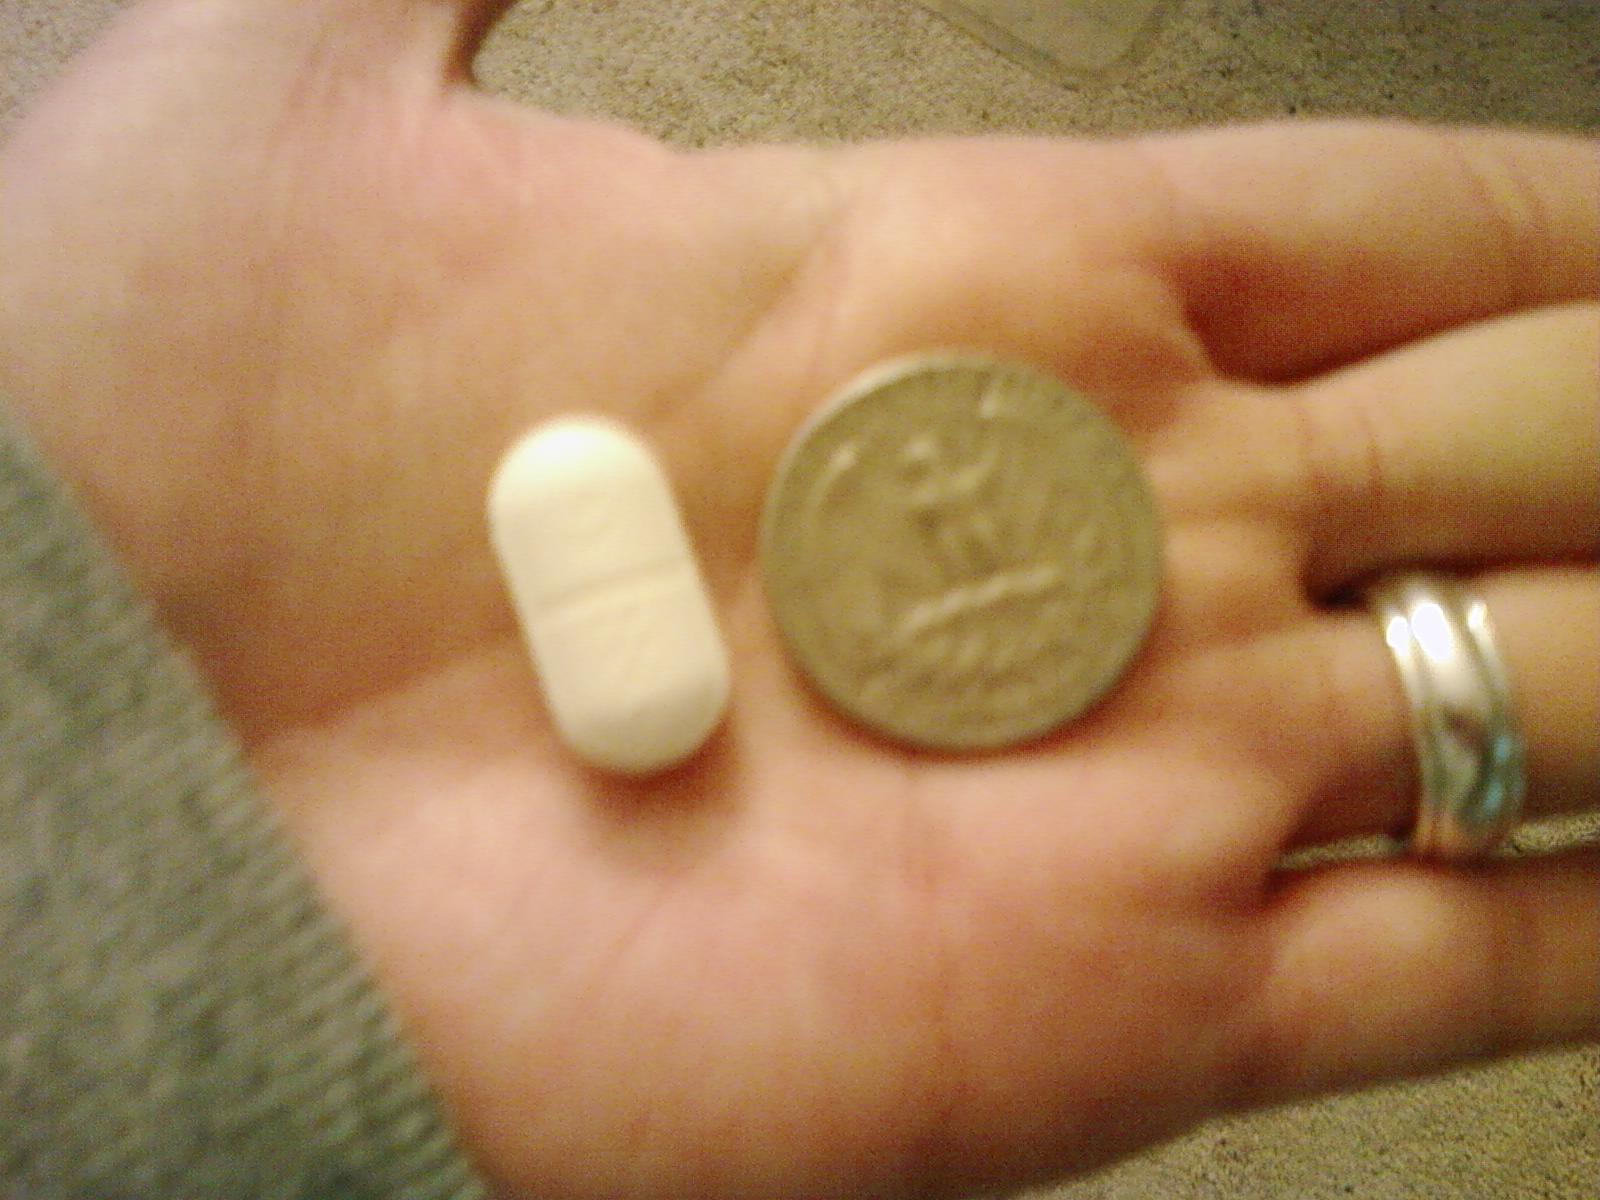 [pill]